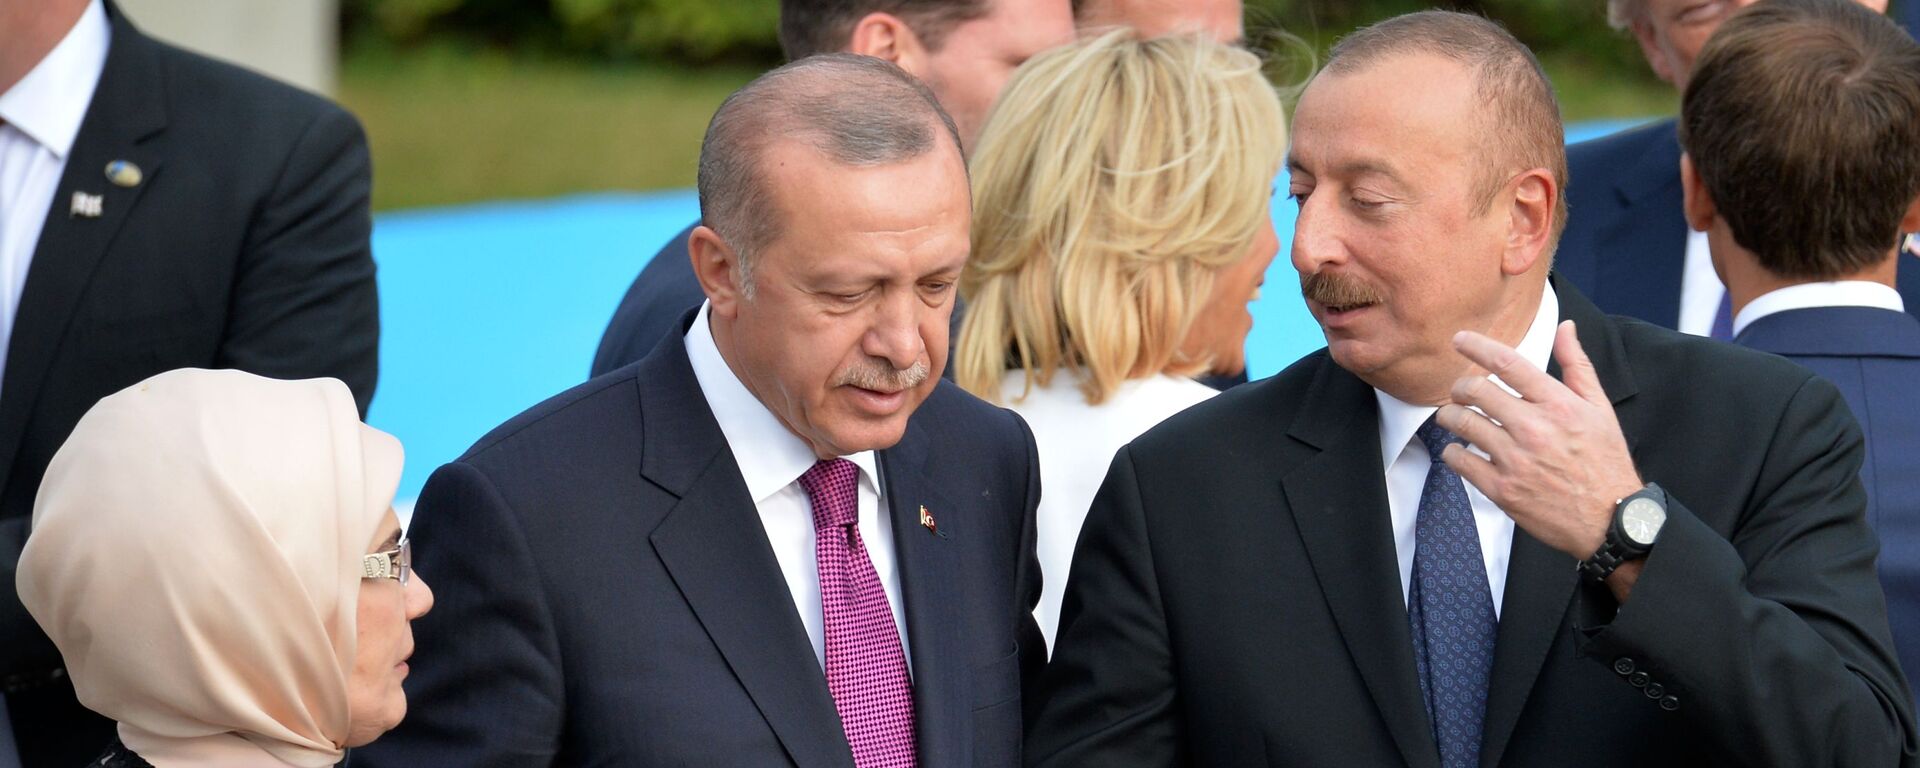 Президент Турции Реджеп Тайип Эрдоган и президент Азербайджана Ильхам Алиев (справа) на саммите НАТО в Брюсселе (11 июля 2018). - Sputnik Արմենիա, 1920, 13.12.2020